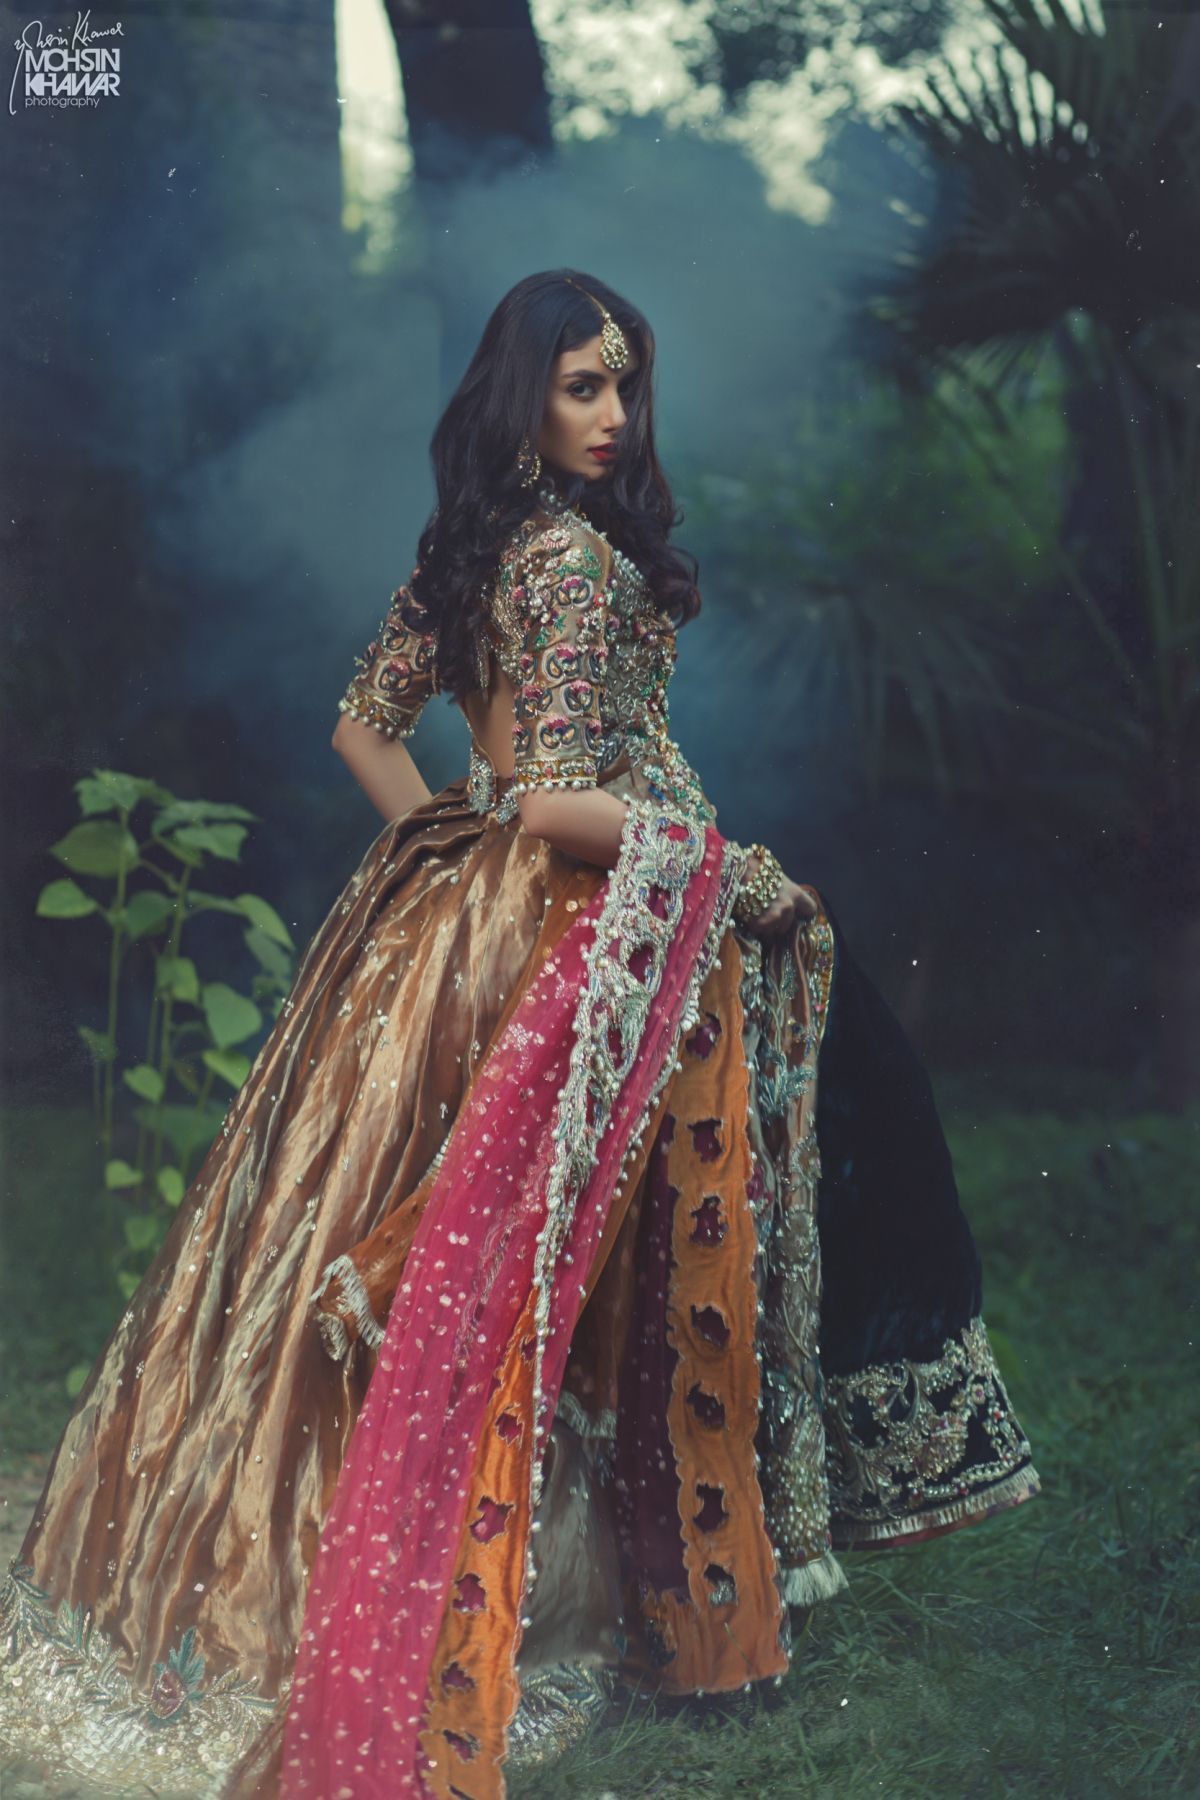 Fashion -   13 wedding Indian fashion ideas